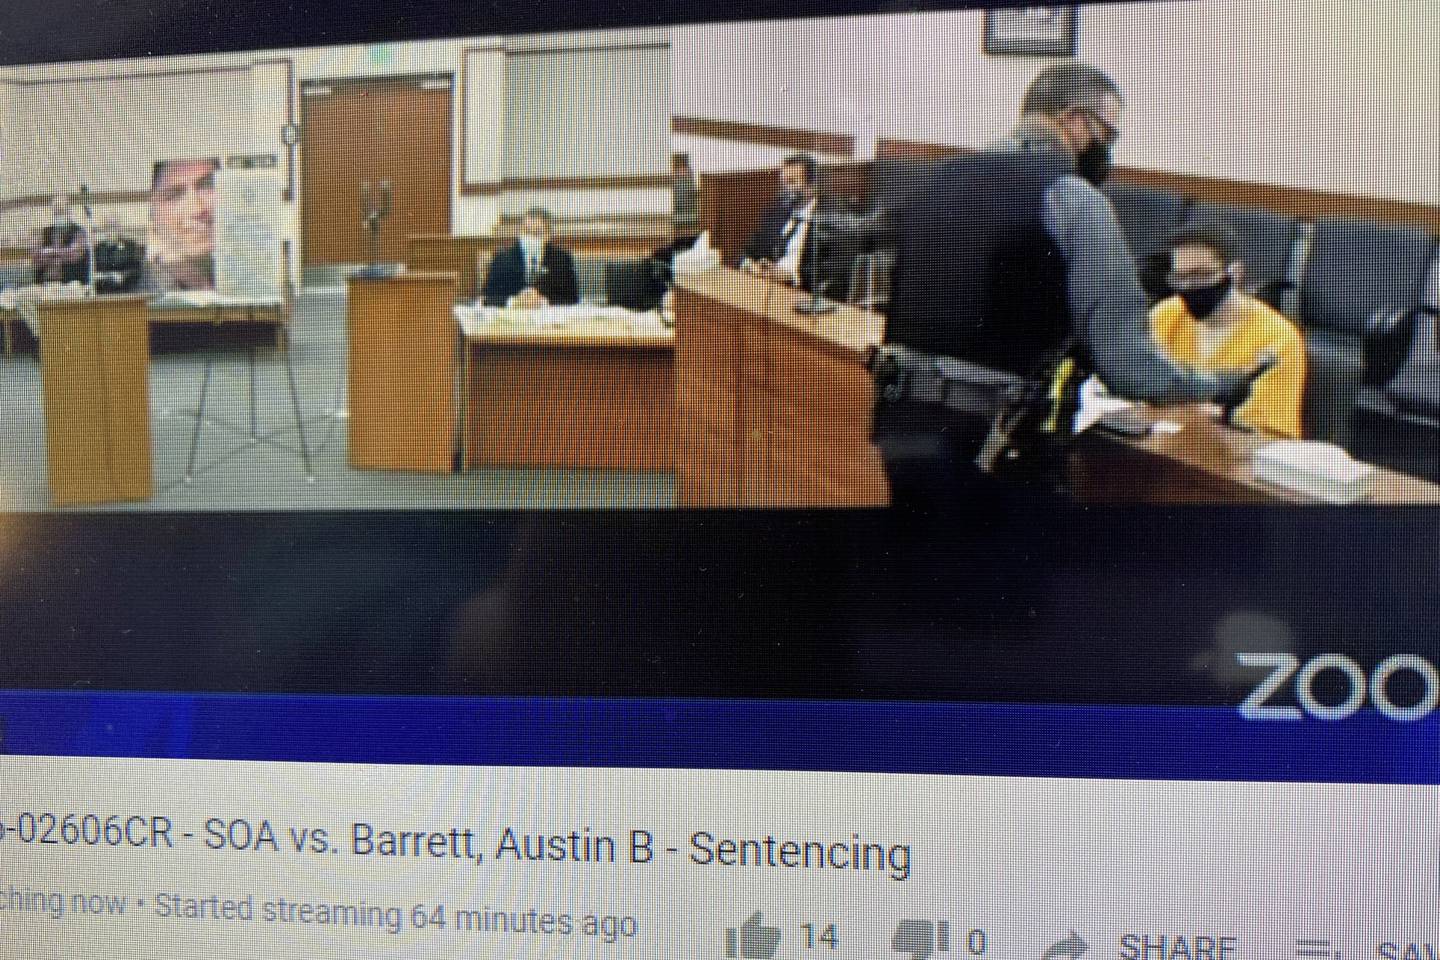 Austin Barrett Sentencing